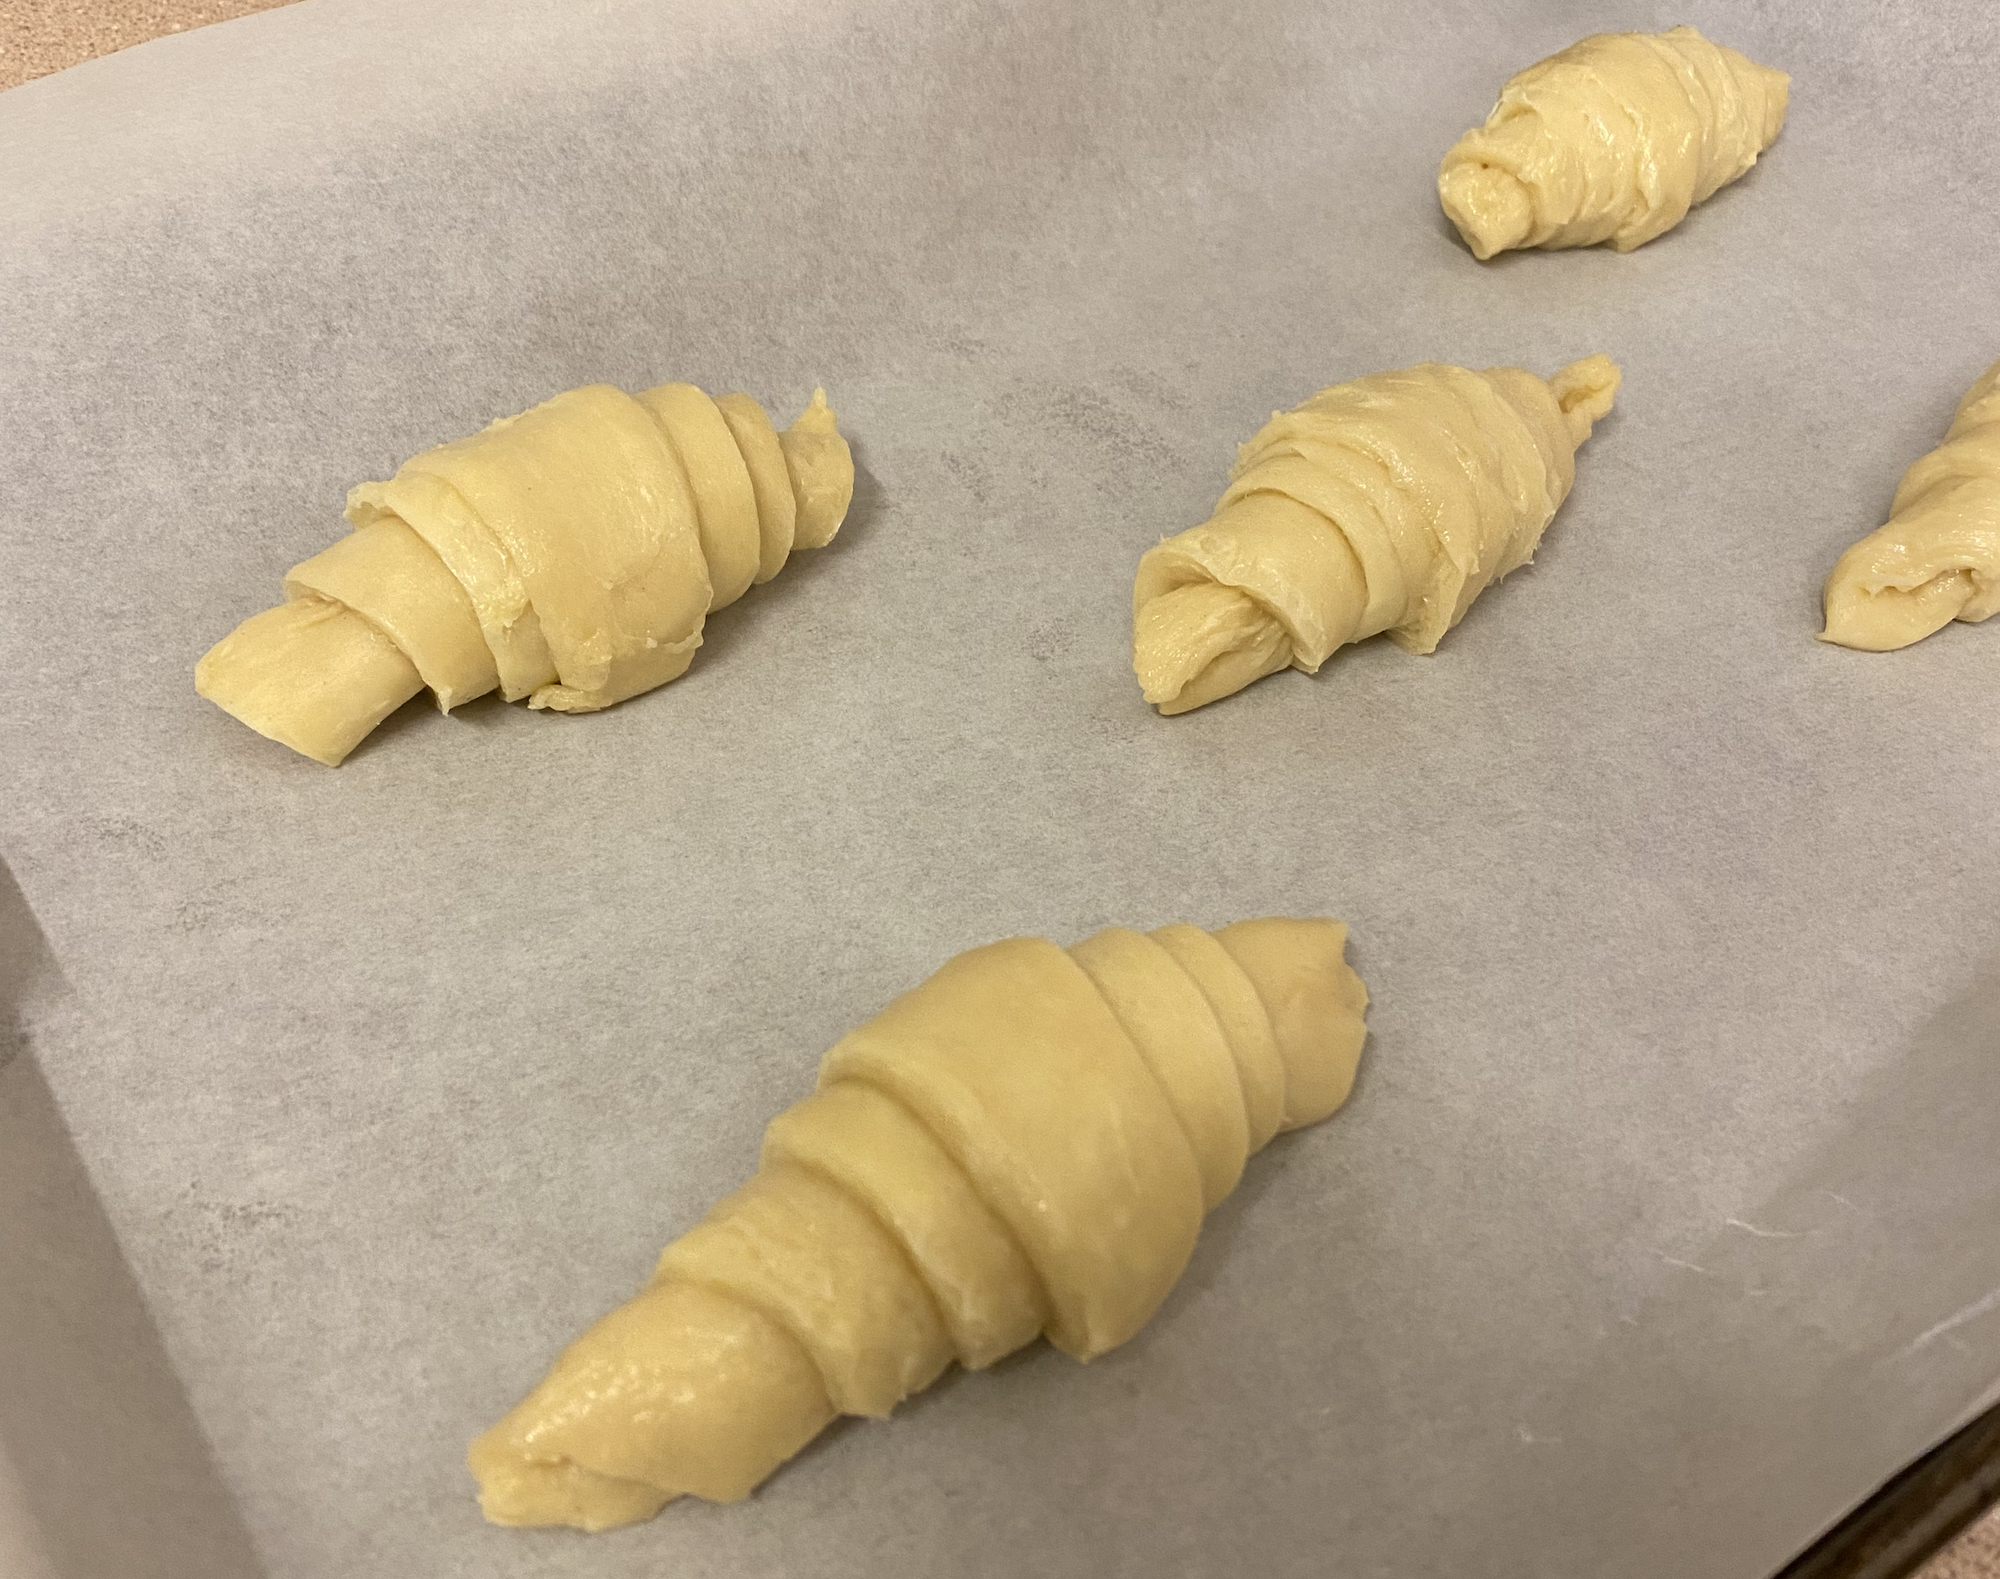 First batch of dough, first bake, shaped